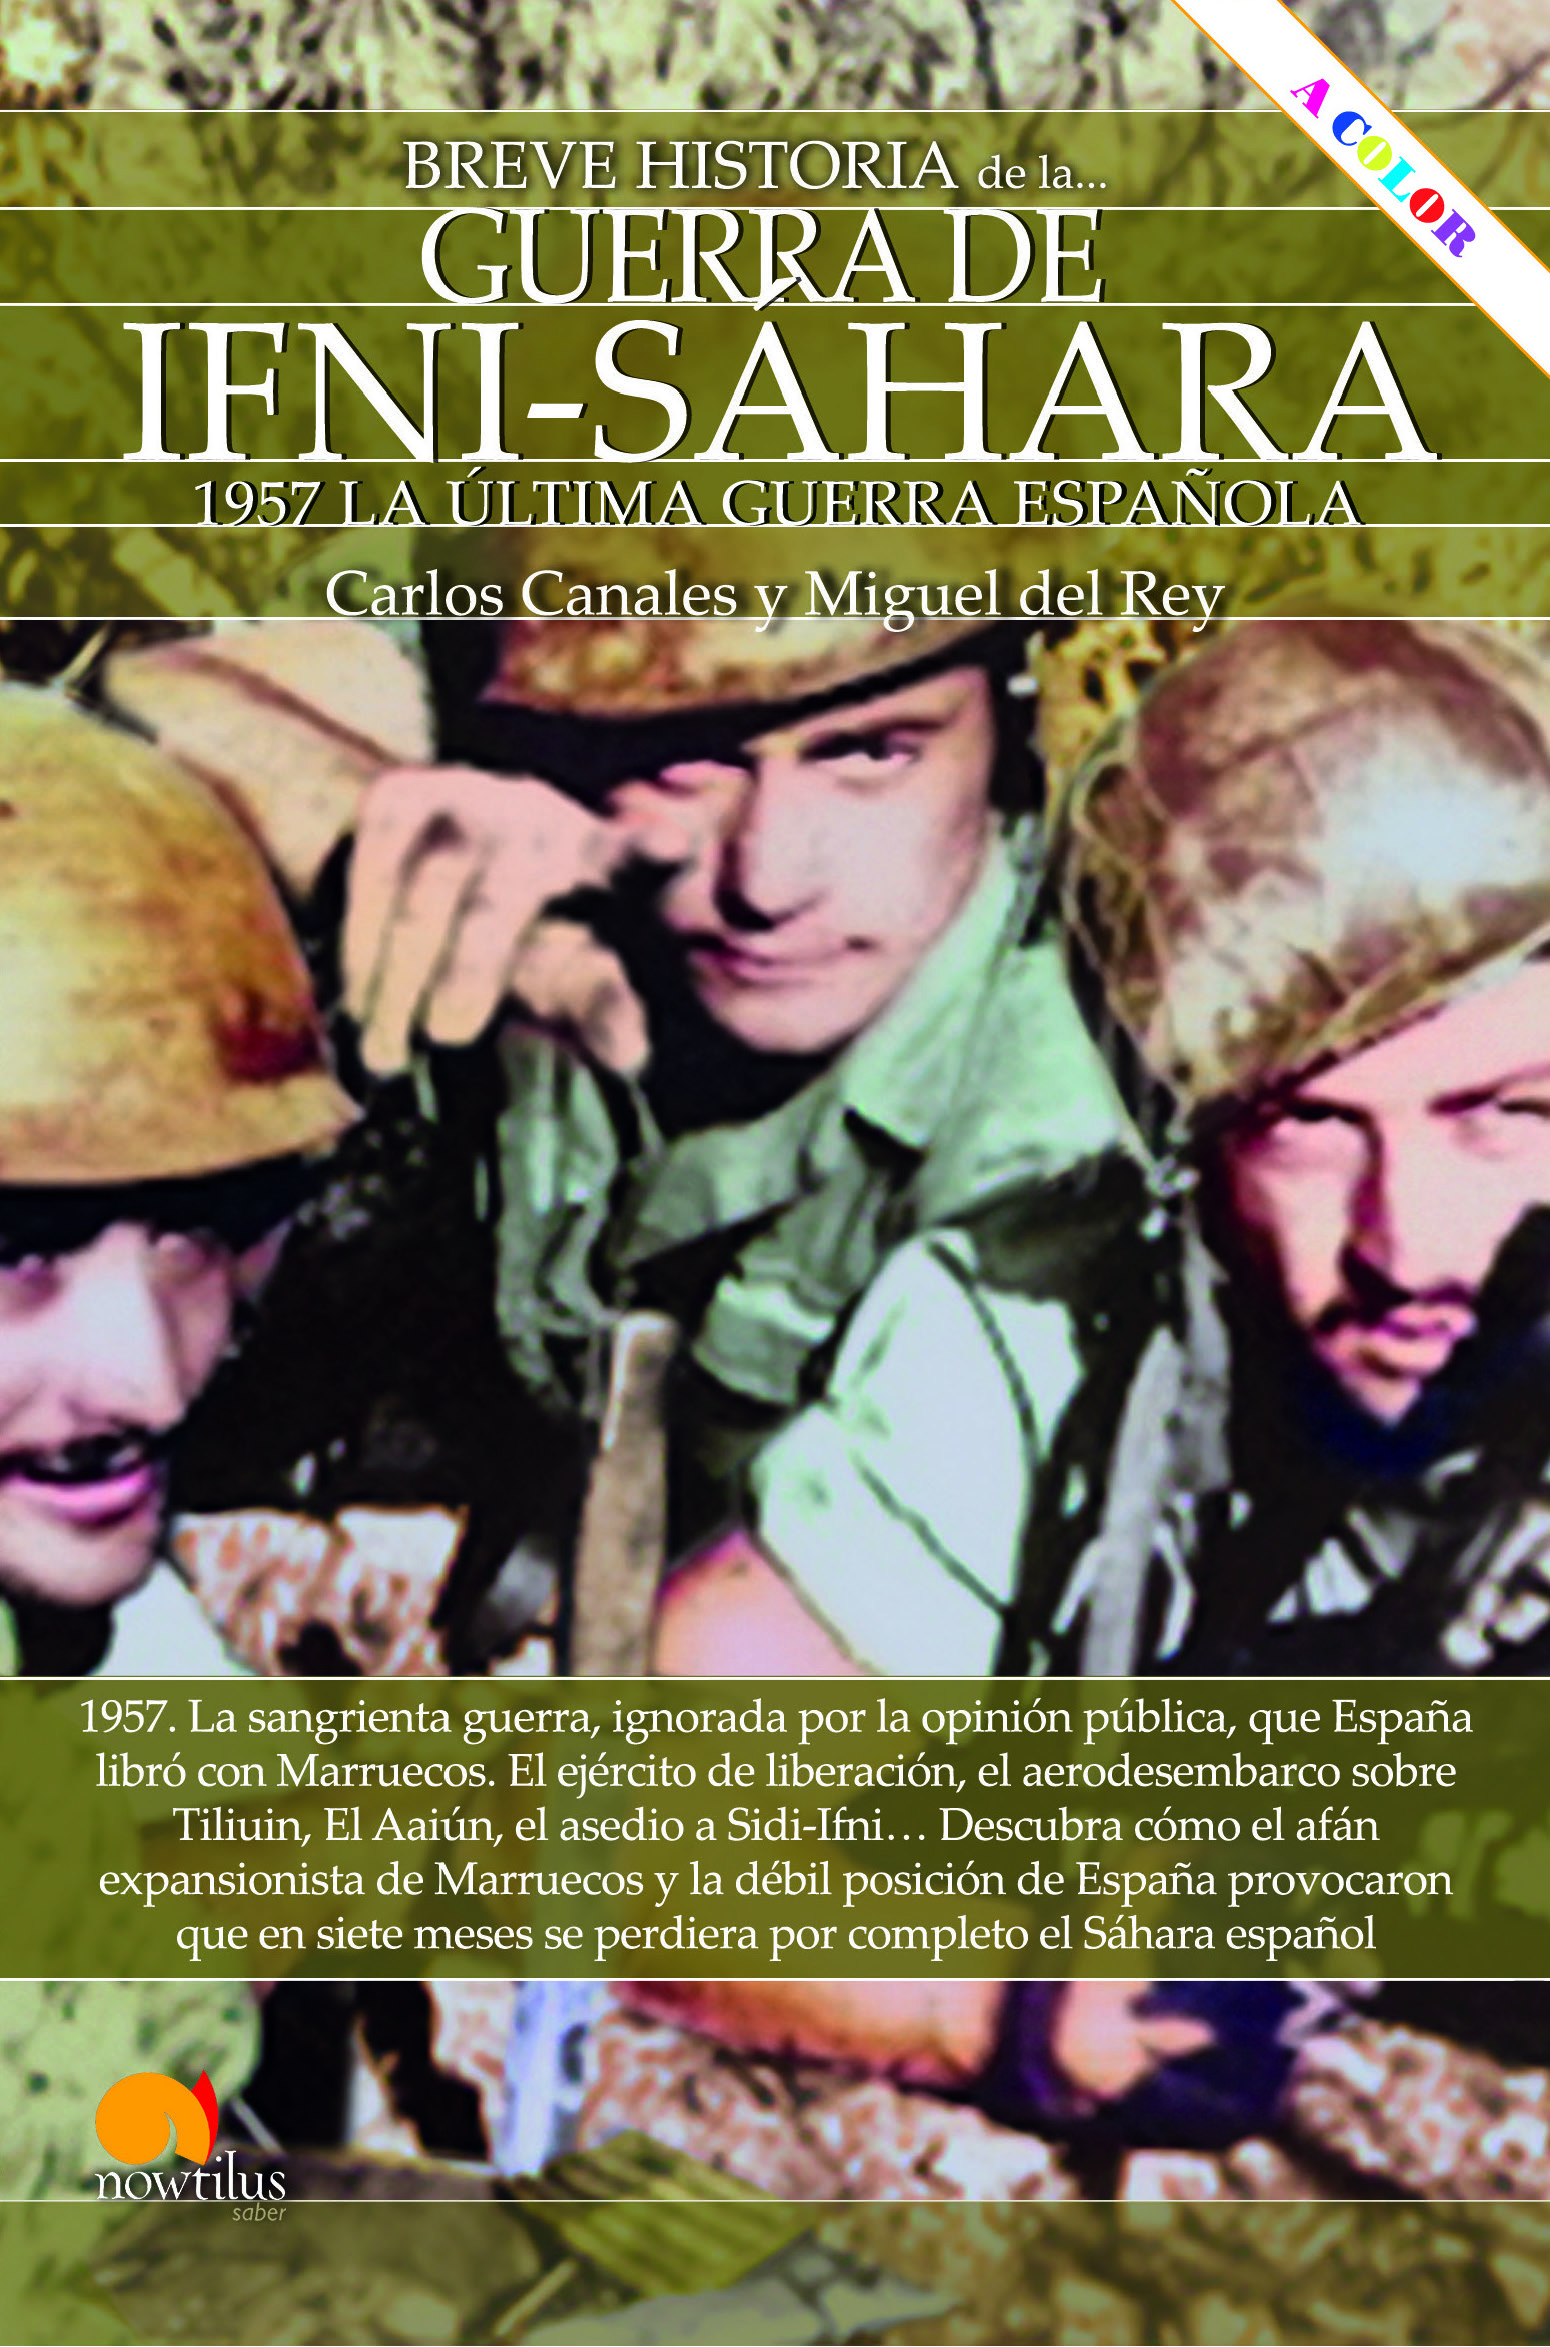 Breve historia de la Guerra de Ifni-Sáhara nueva edición color   «1957 La última guerra española» (9788413052694)